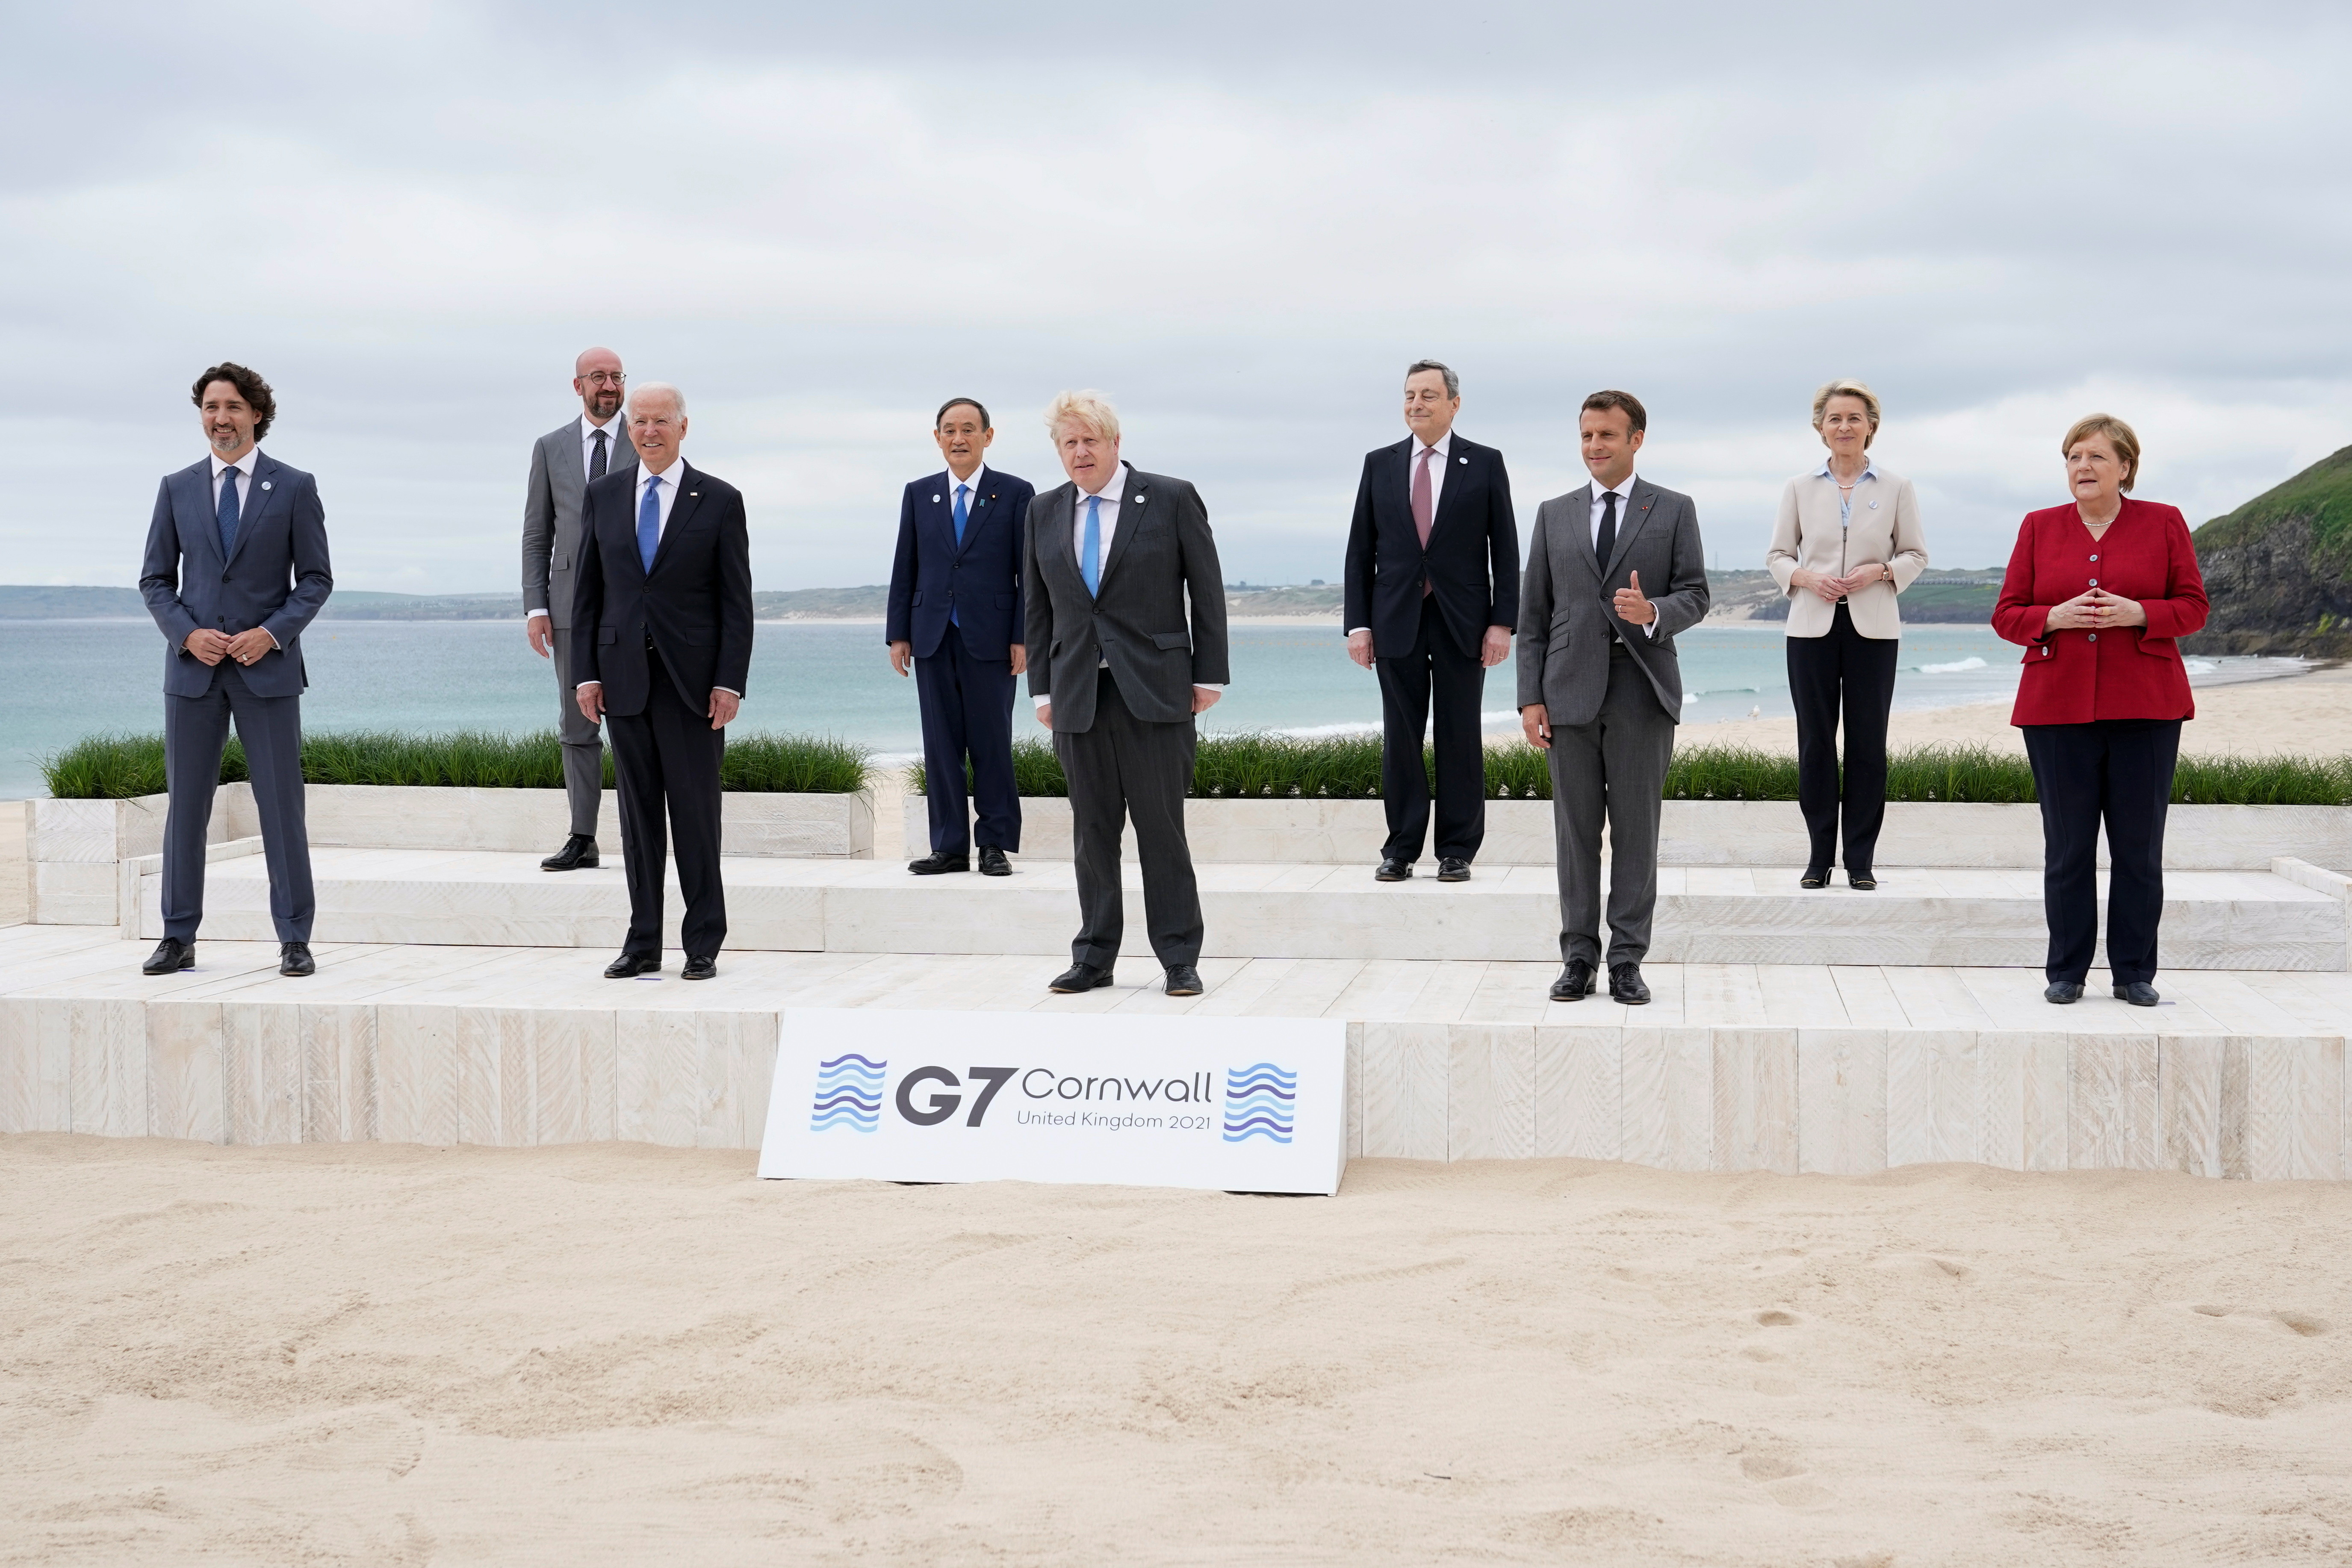 G7,拜登,一帶一路,中國,基礎建設,歐盟,疫苗,外交,馬歇爾計畫,美國優先,拜登,亞太再平衡